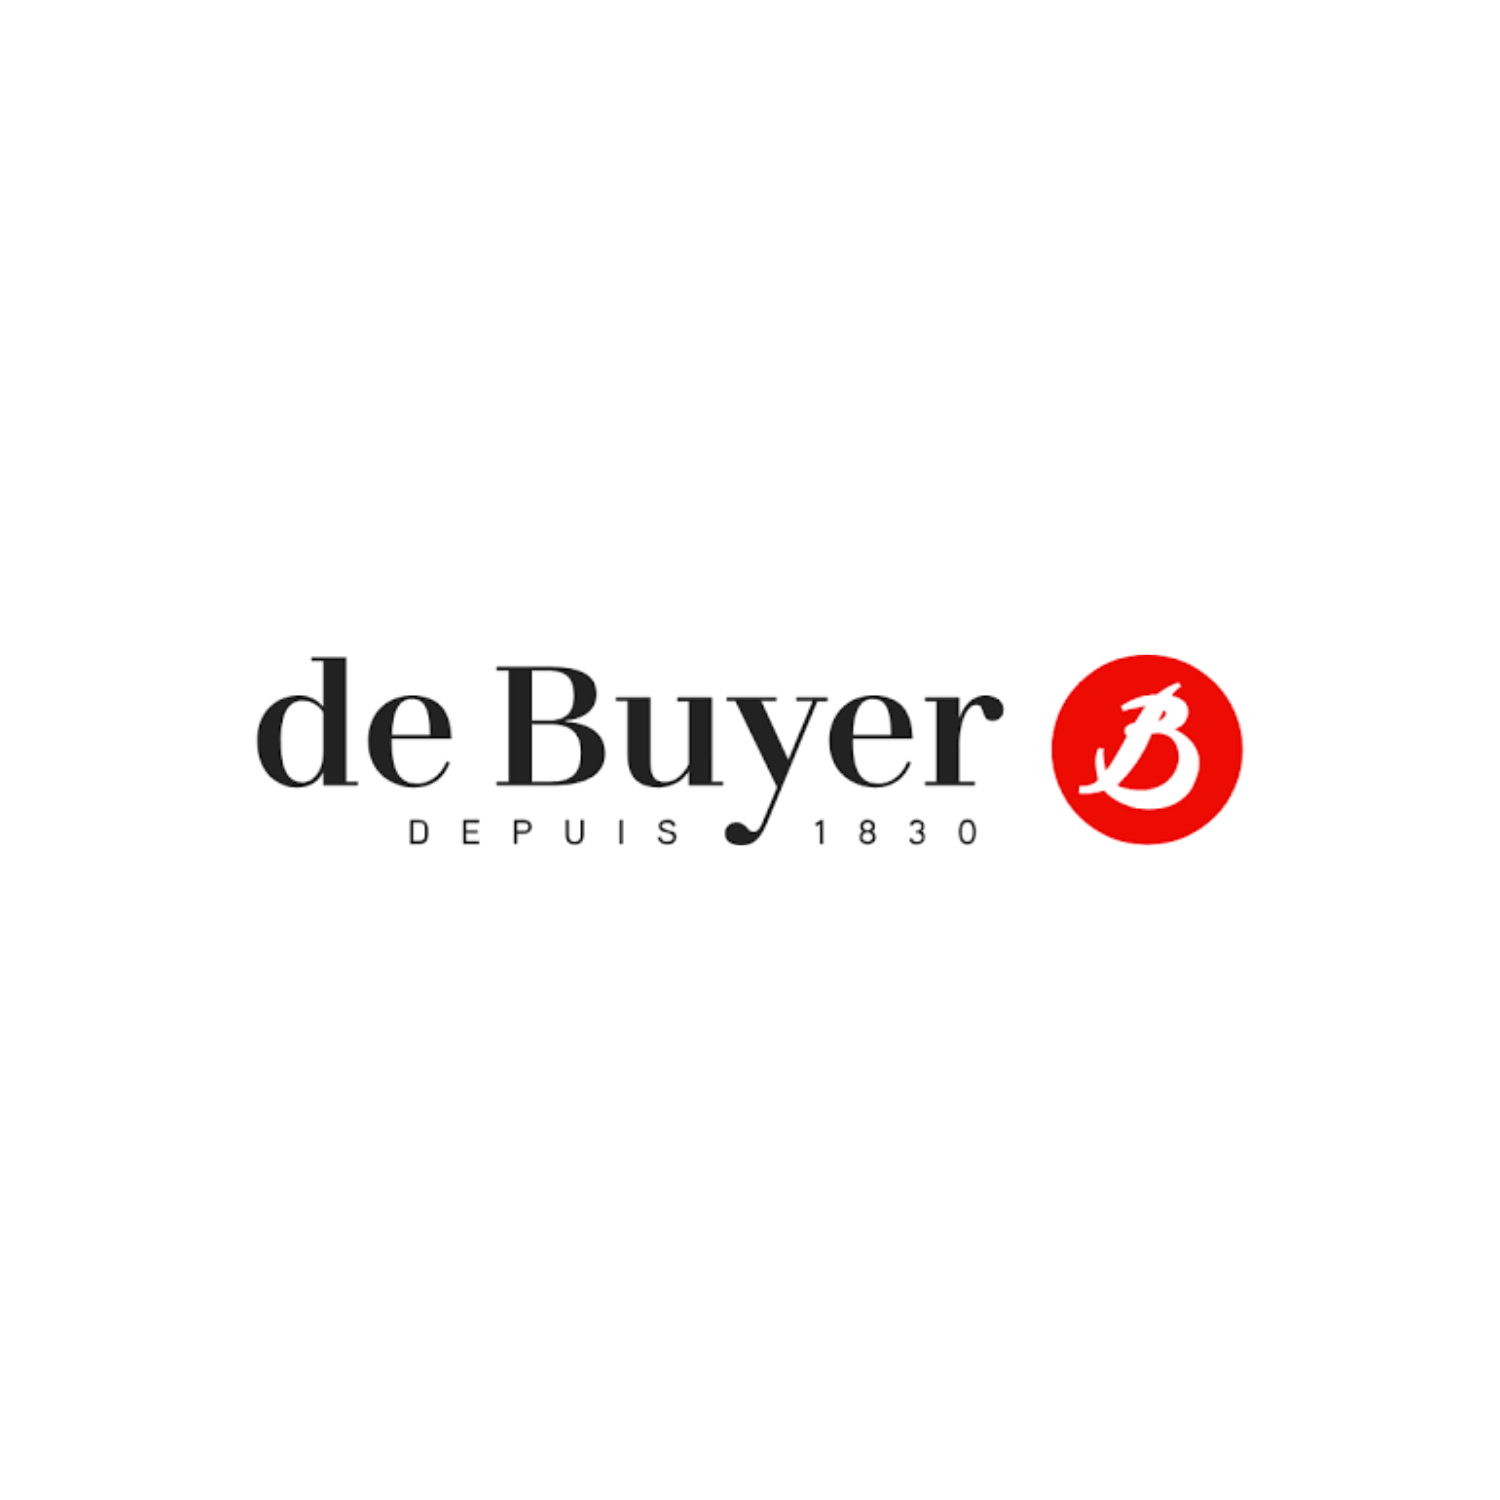 de-buyer-logo